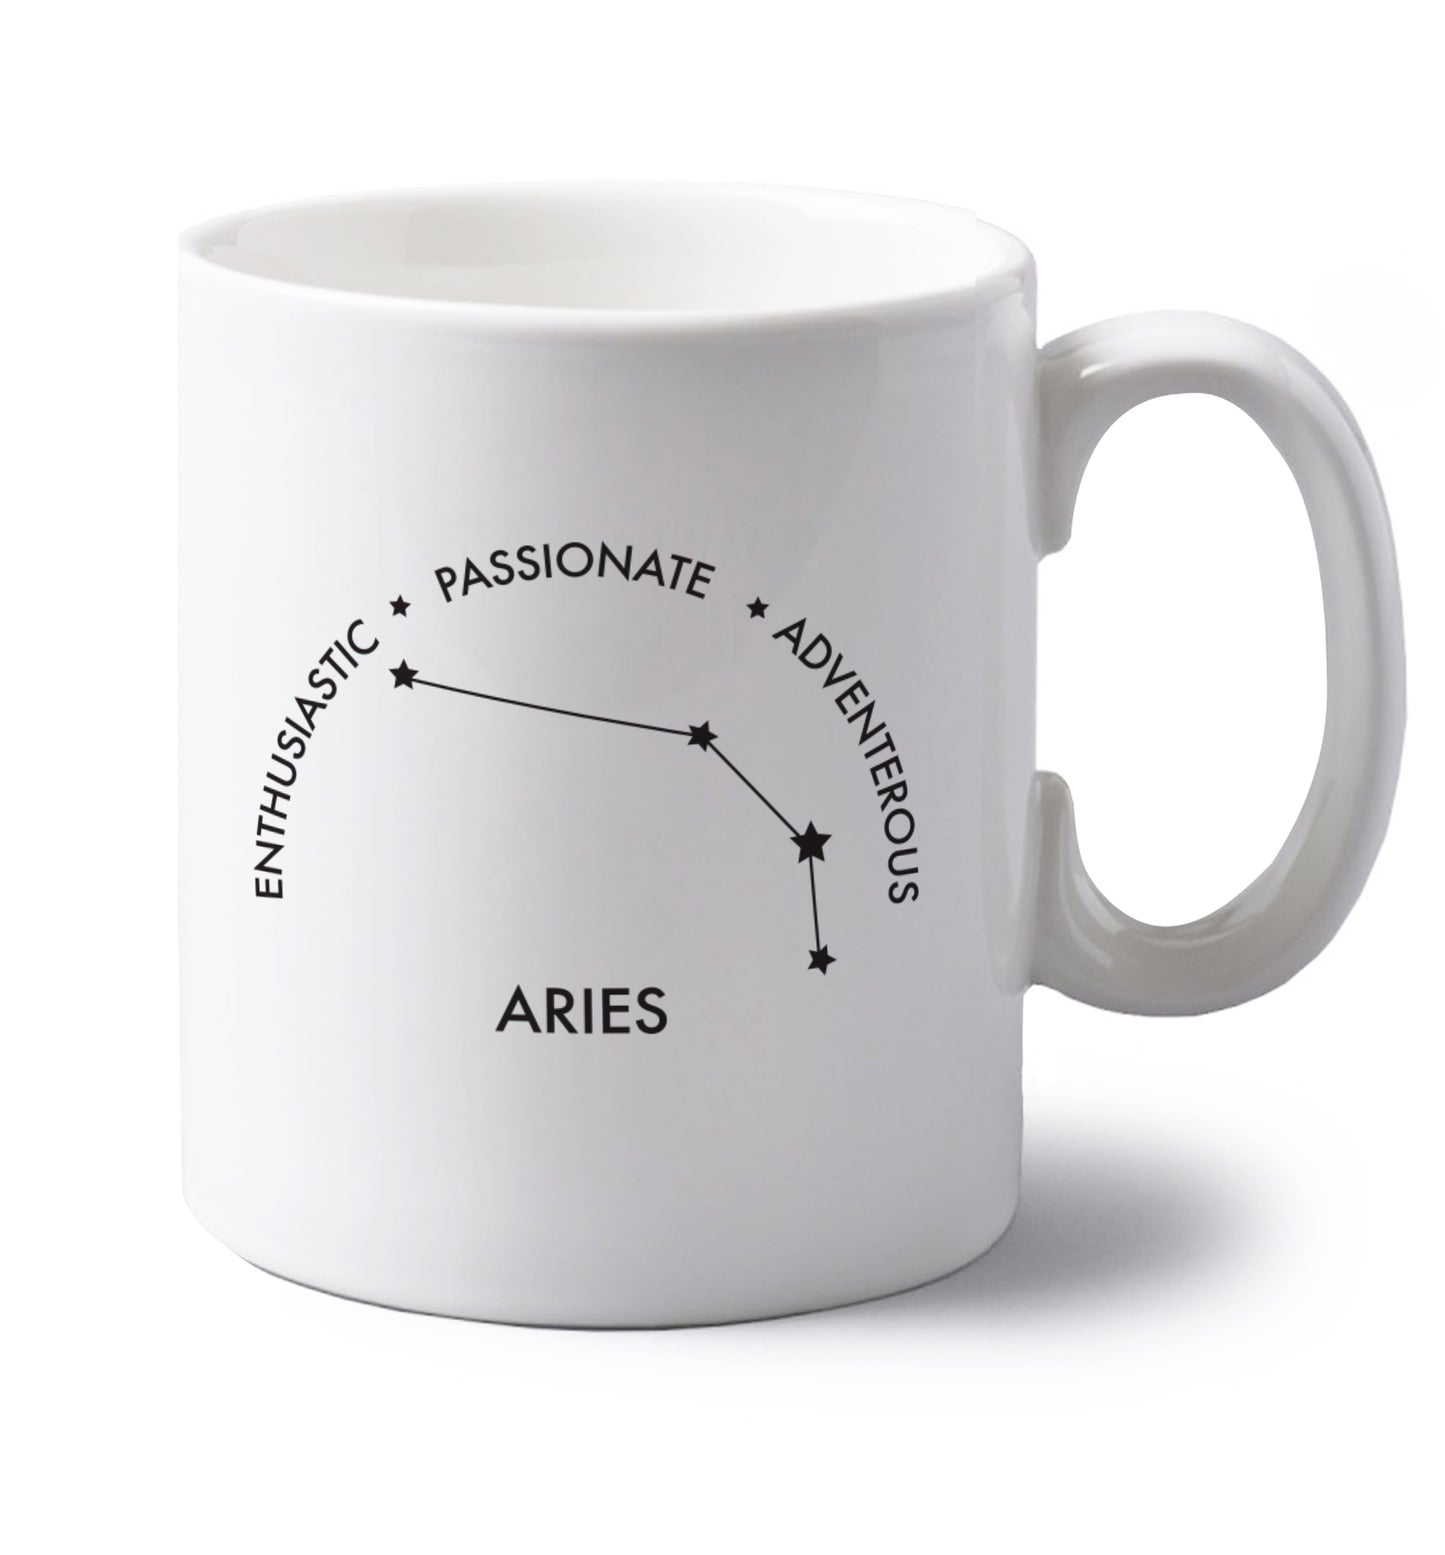 Aries enthusiastic | passionate | adventerous left handed white ceramic mug 